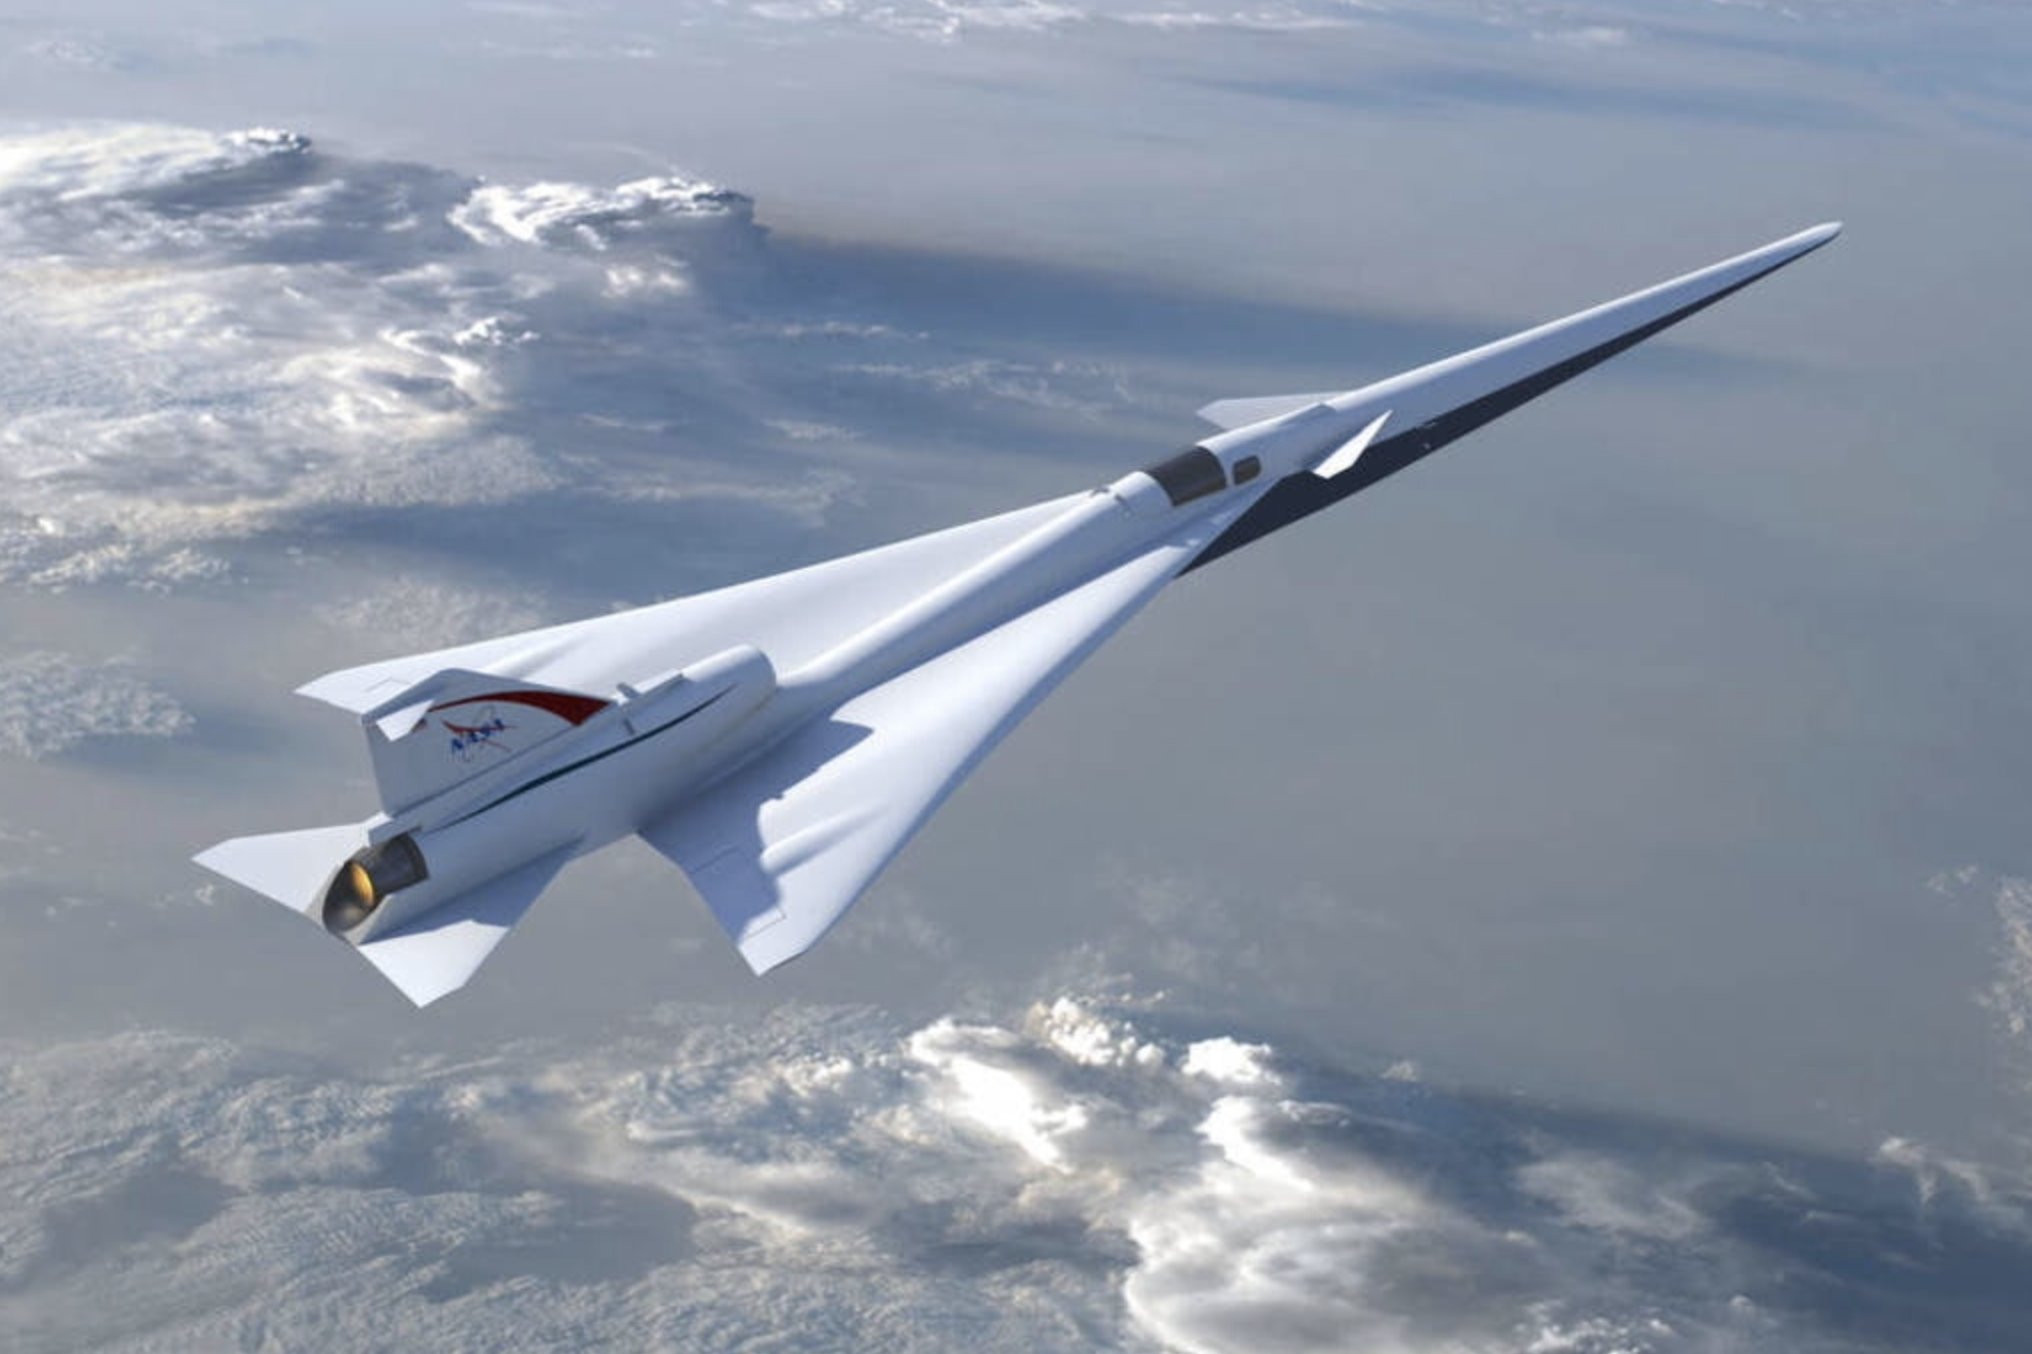  Тихий пассажирский сверхзвуковой самолёт от Lockheed Martin и NASA